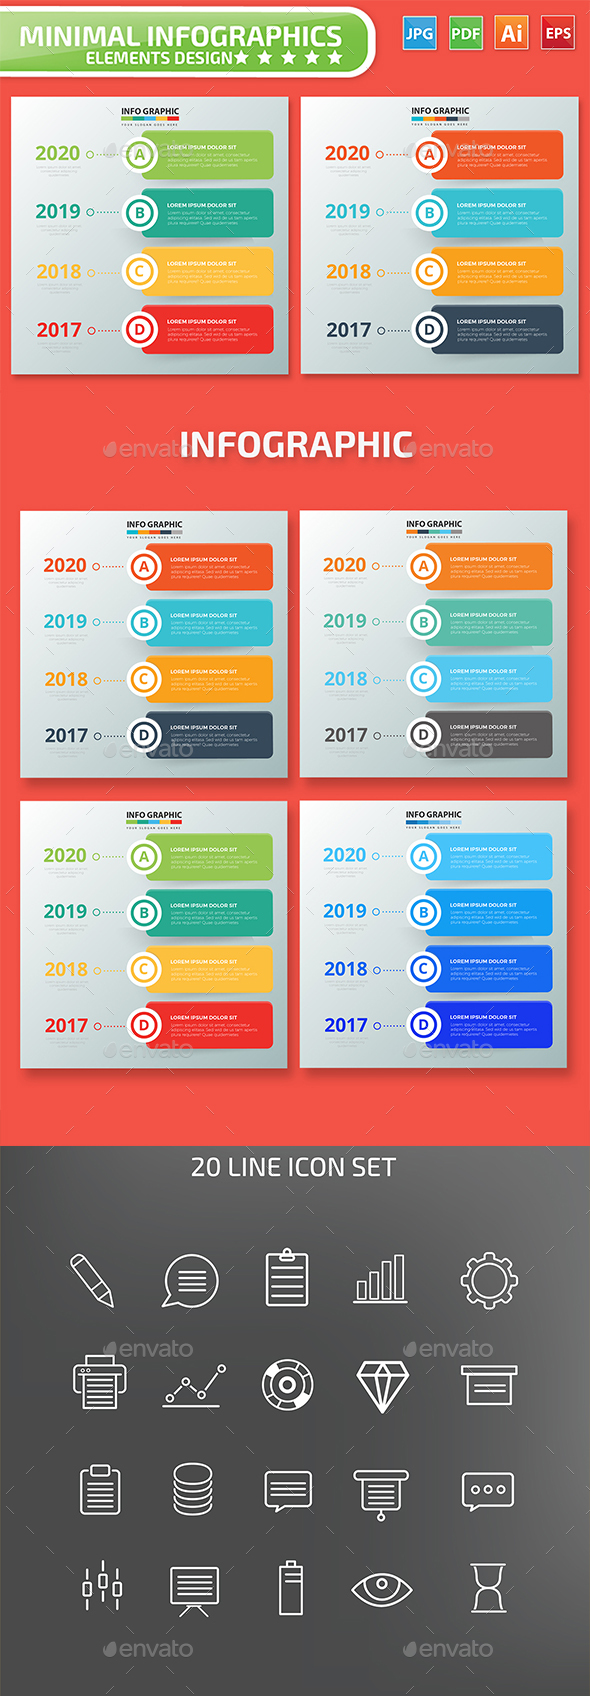 Timeline Infographic Design